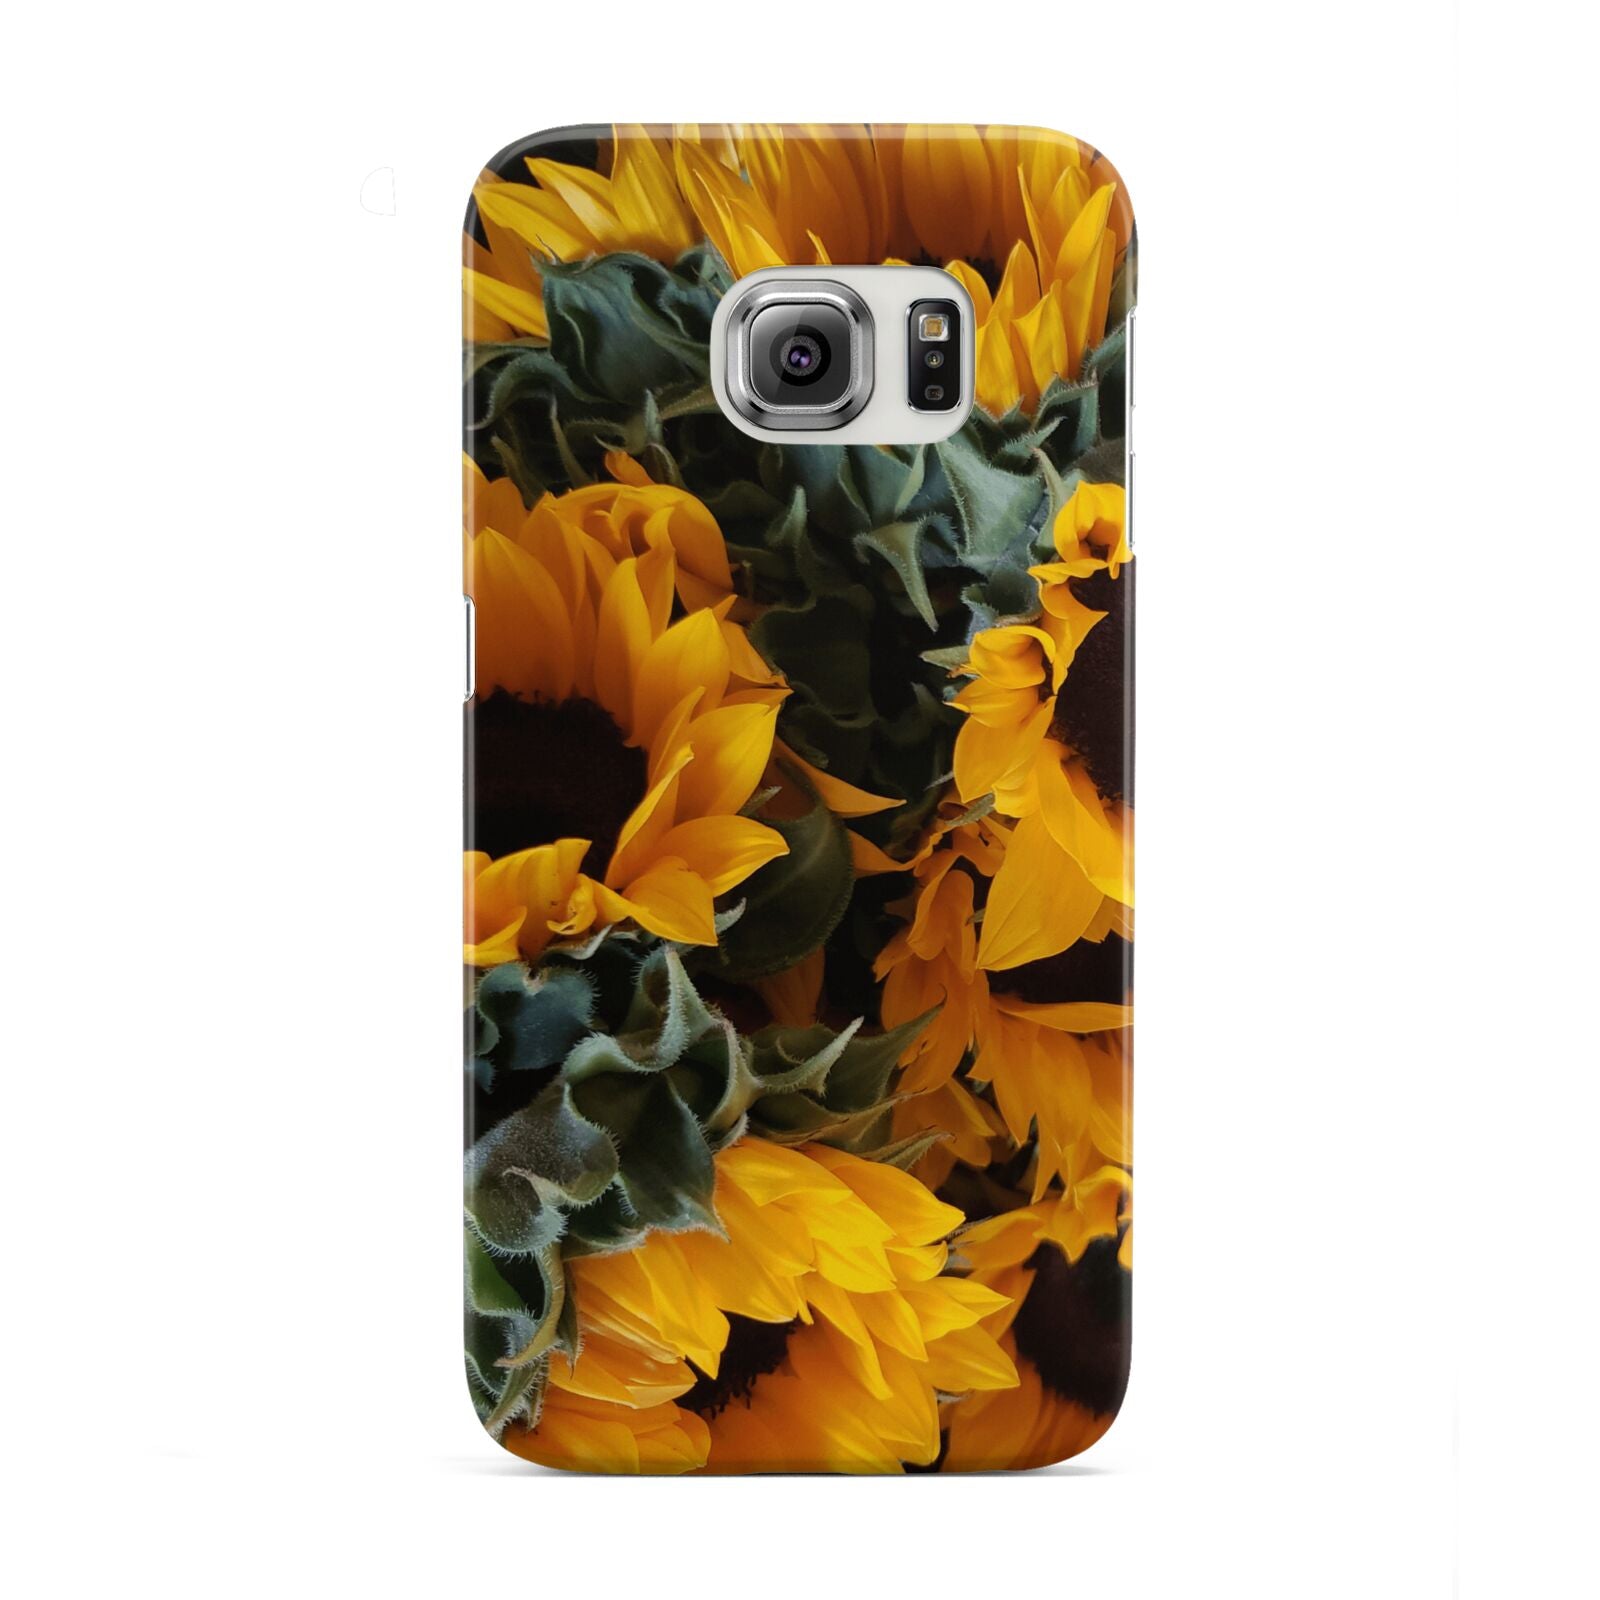 Sunflower Samsung Galaxy S6 Edge Case